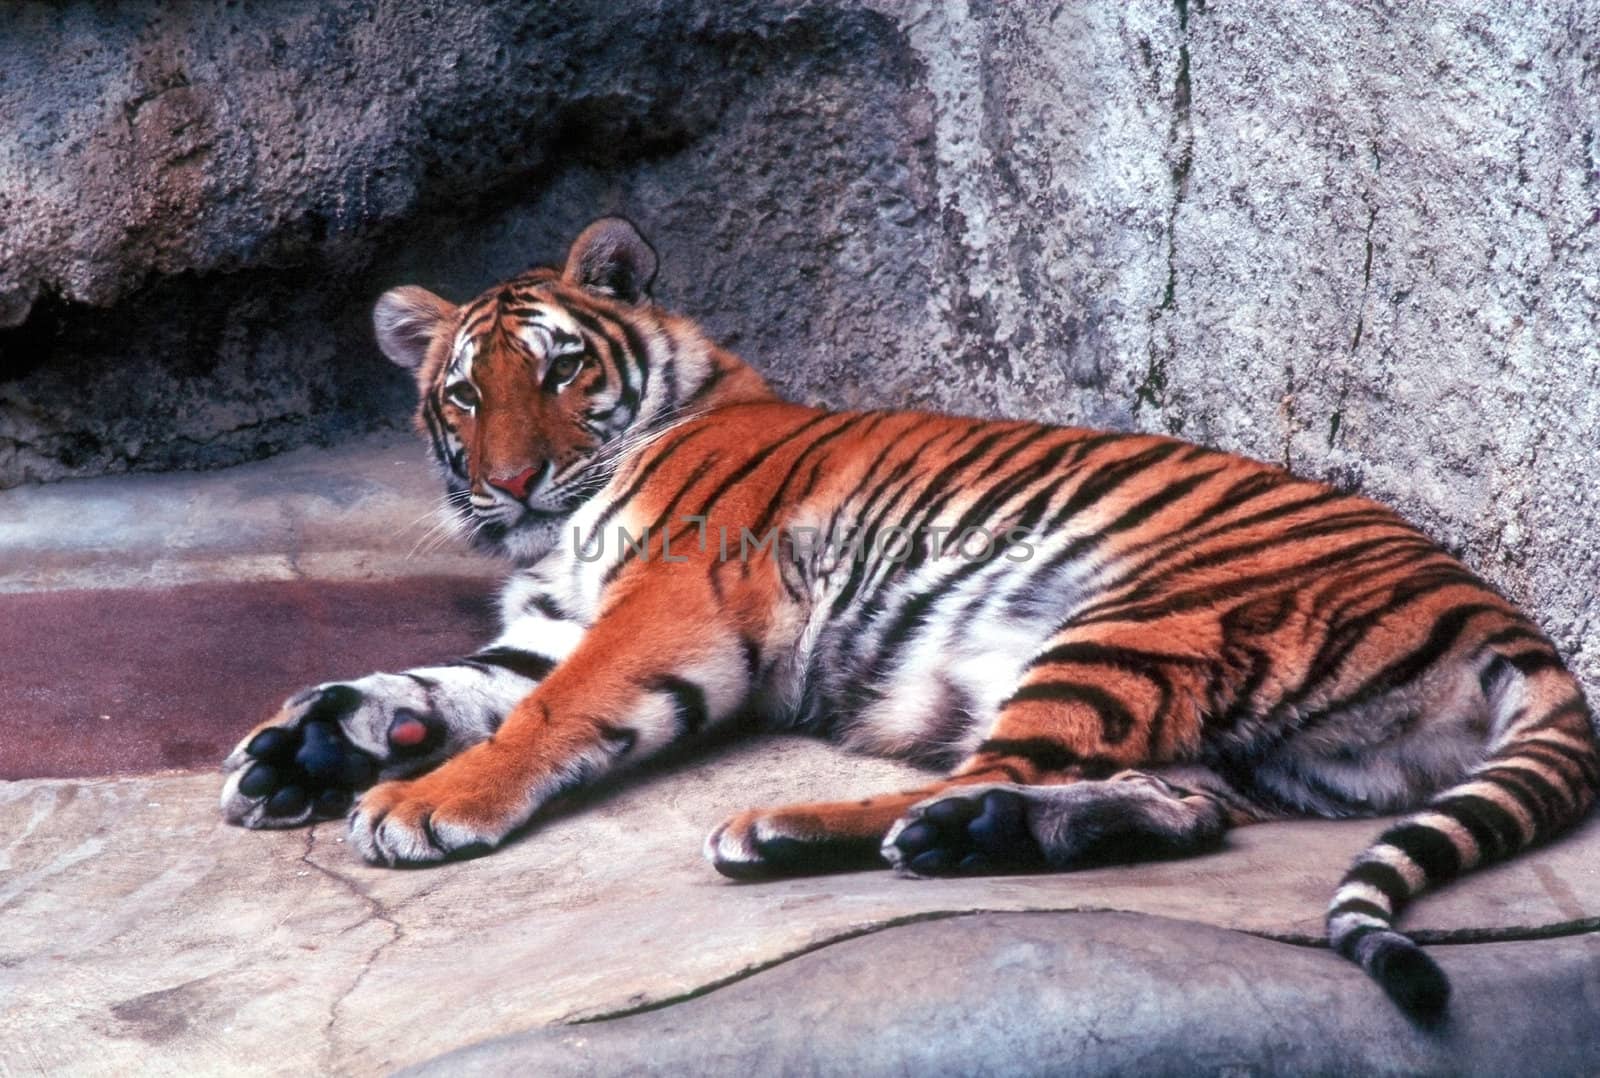 Tiger by jol66